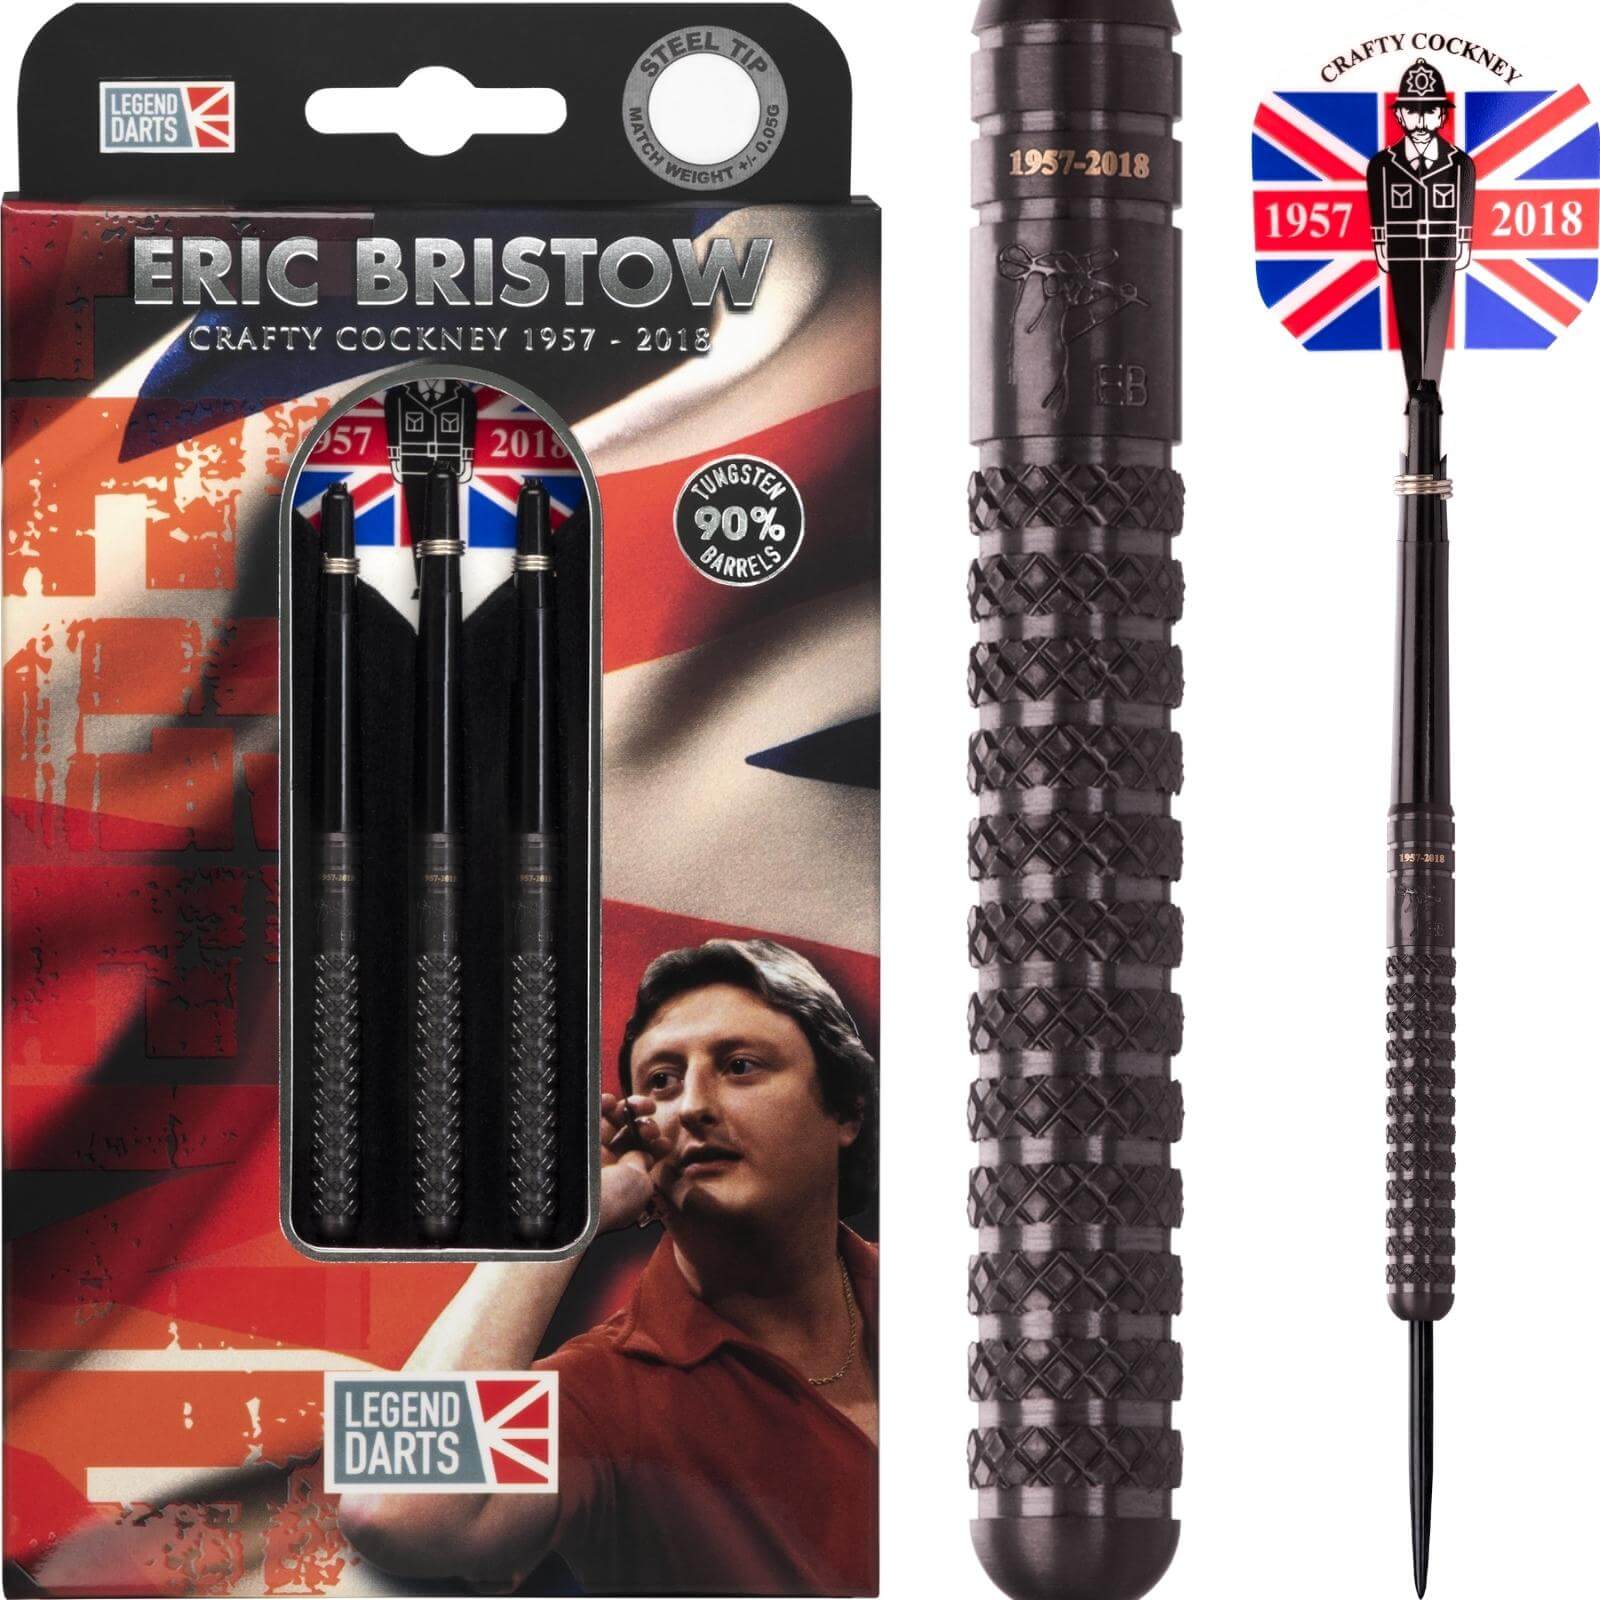 Darts - Legend Darts - Eric Bristow Black Knurled Darts - Steel Tip - 90% Tungsten - 21g 23g 25g 